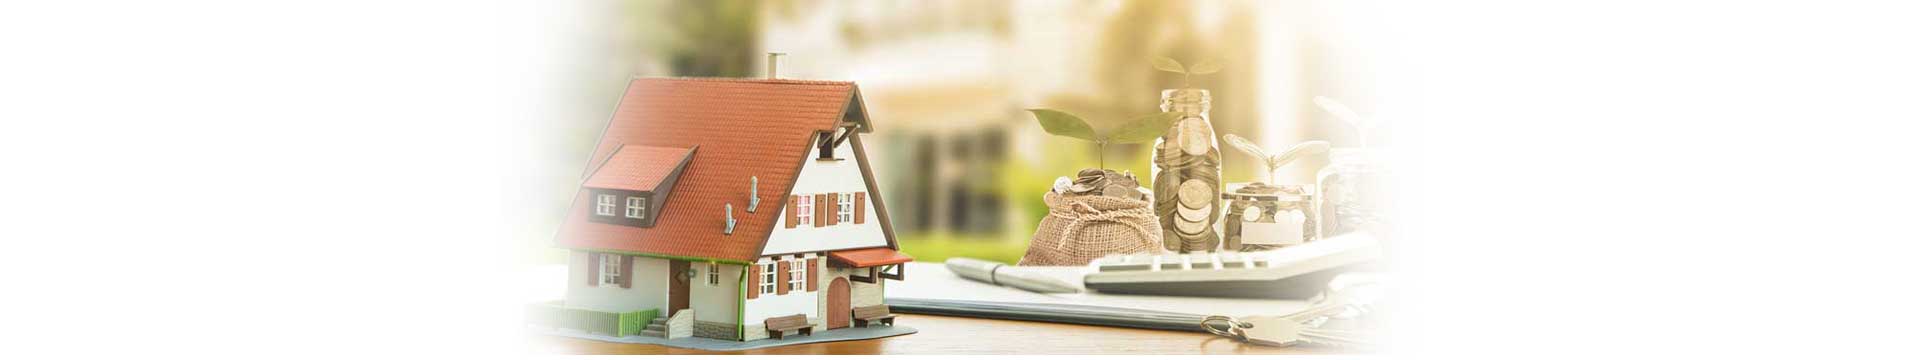 ควักเงินซื้อบ้านเป็นการลงทุนจริงหรือ? แล้วควรลงทุนระยะสั้นหรือยาวดี?